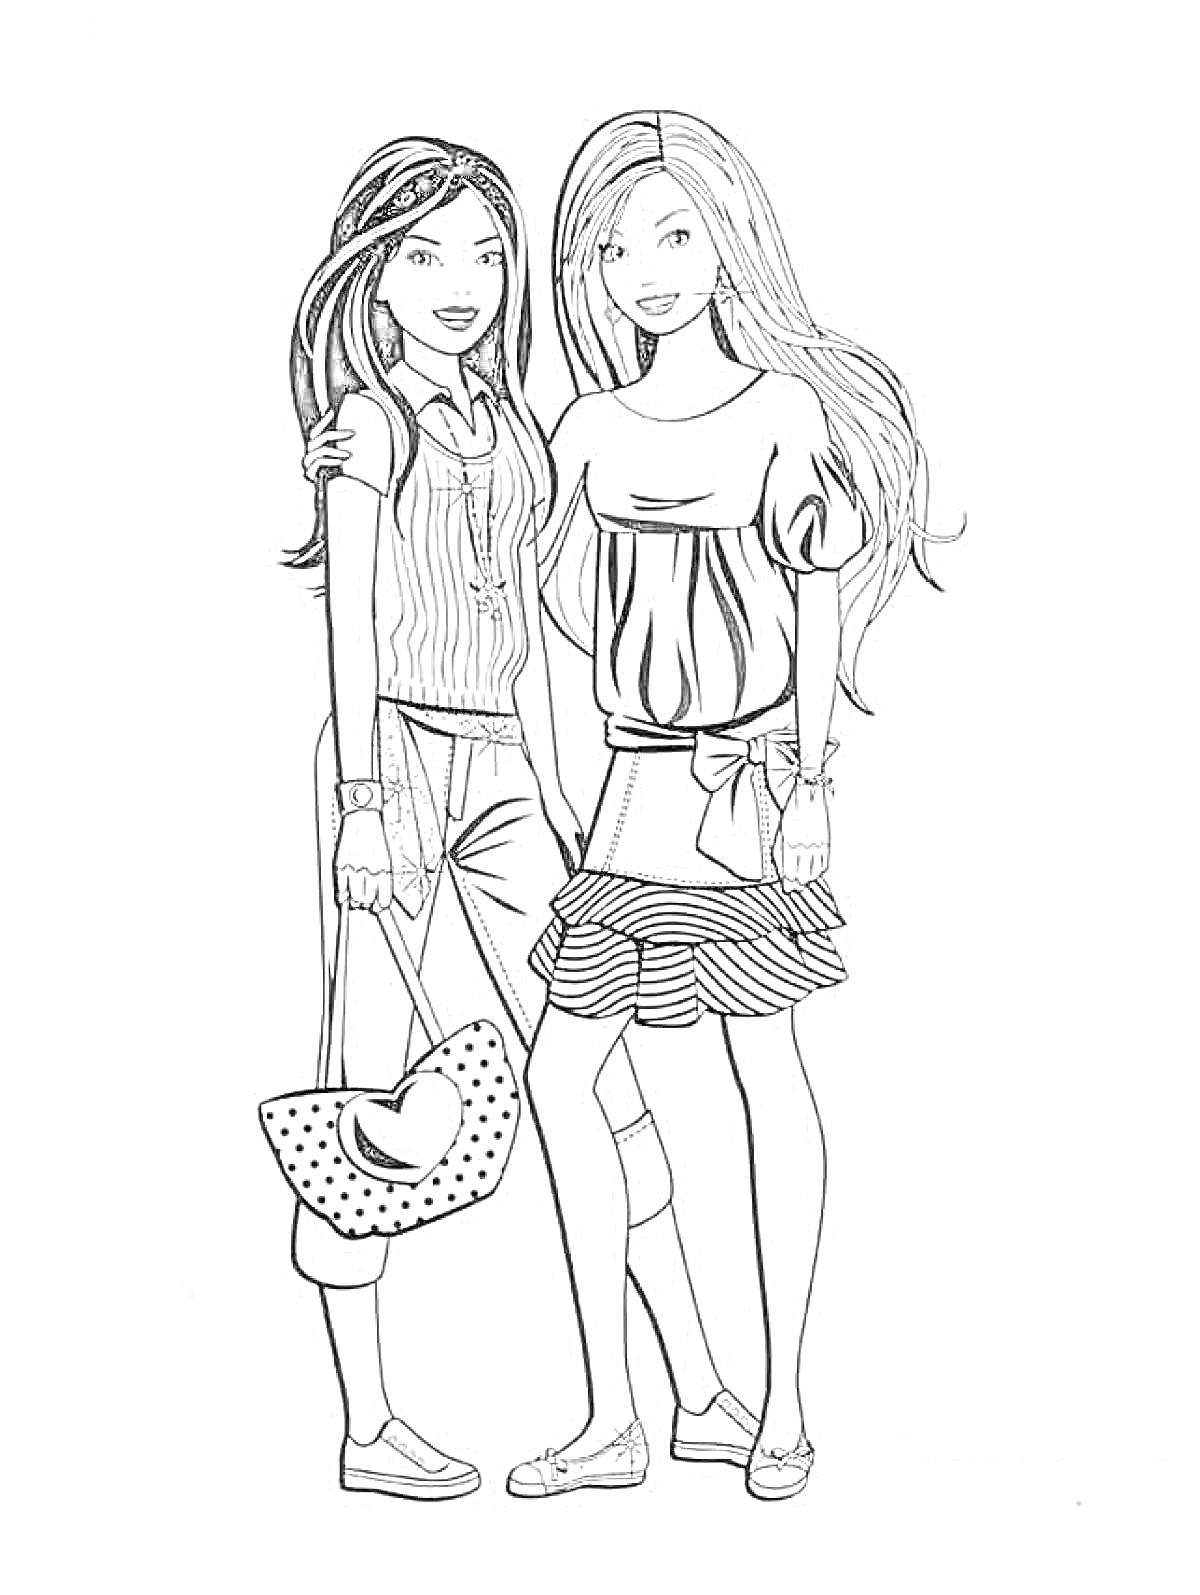 Две подруги-модницы: с длинными волосами, туфлями, аксессуарами, сумкой и стильными нарядами